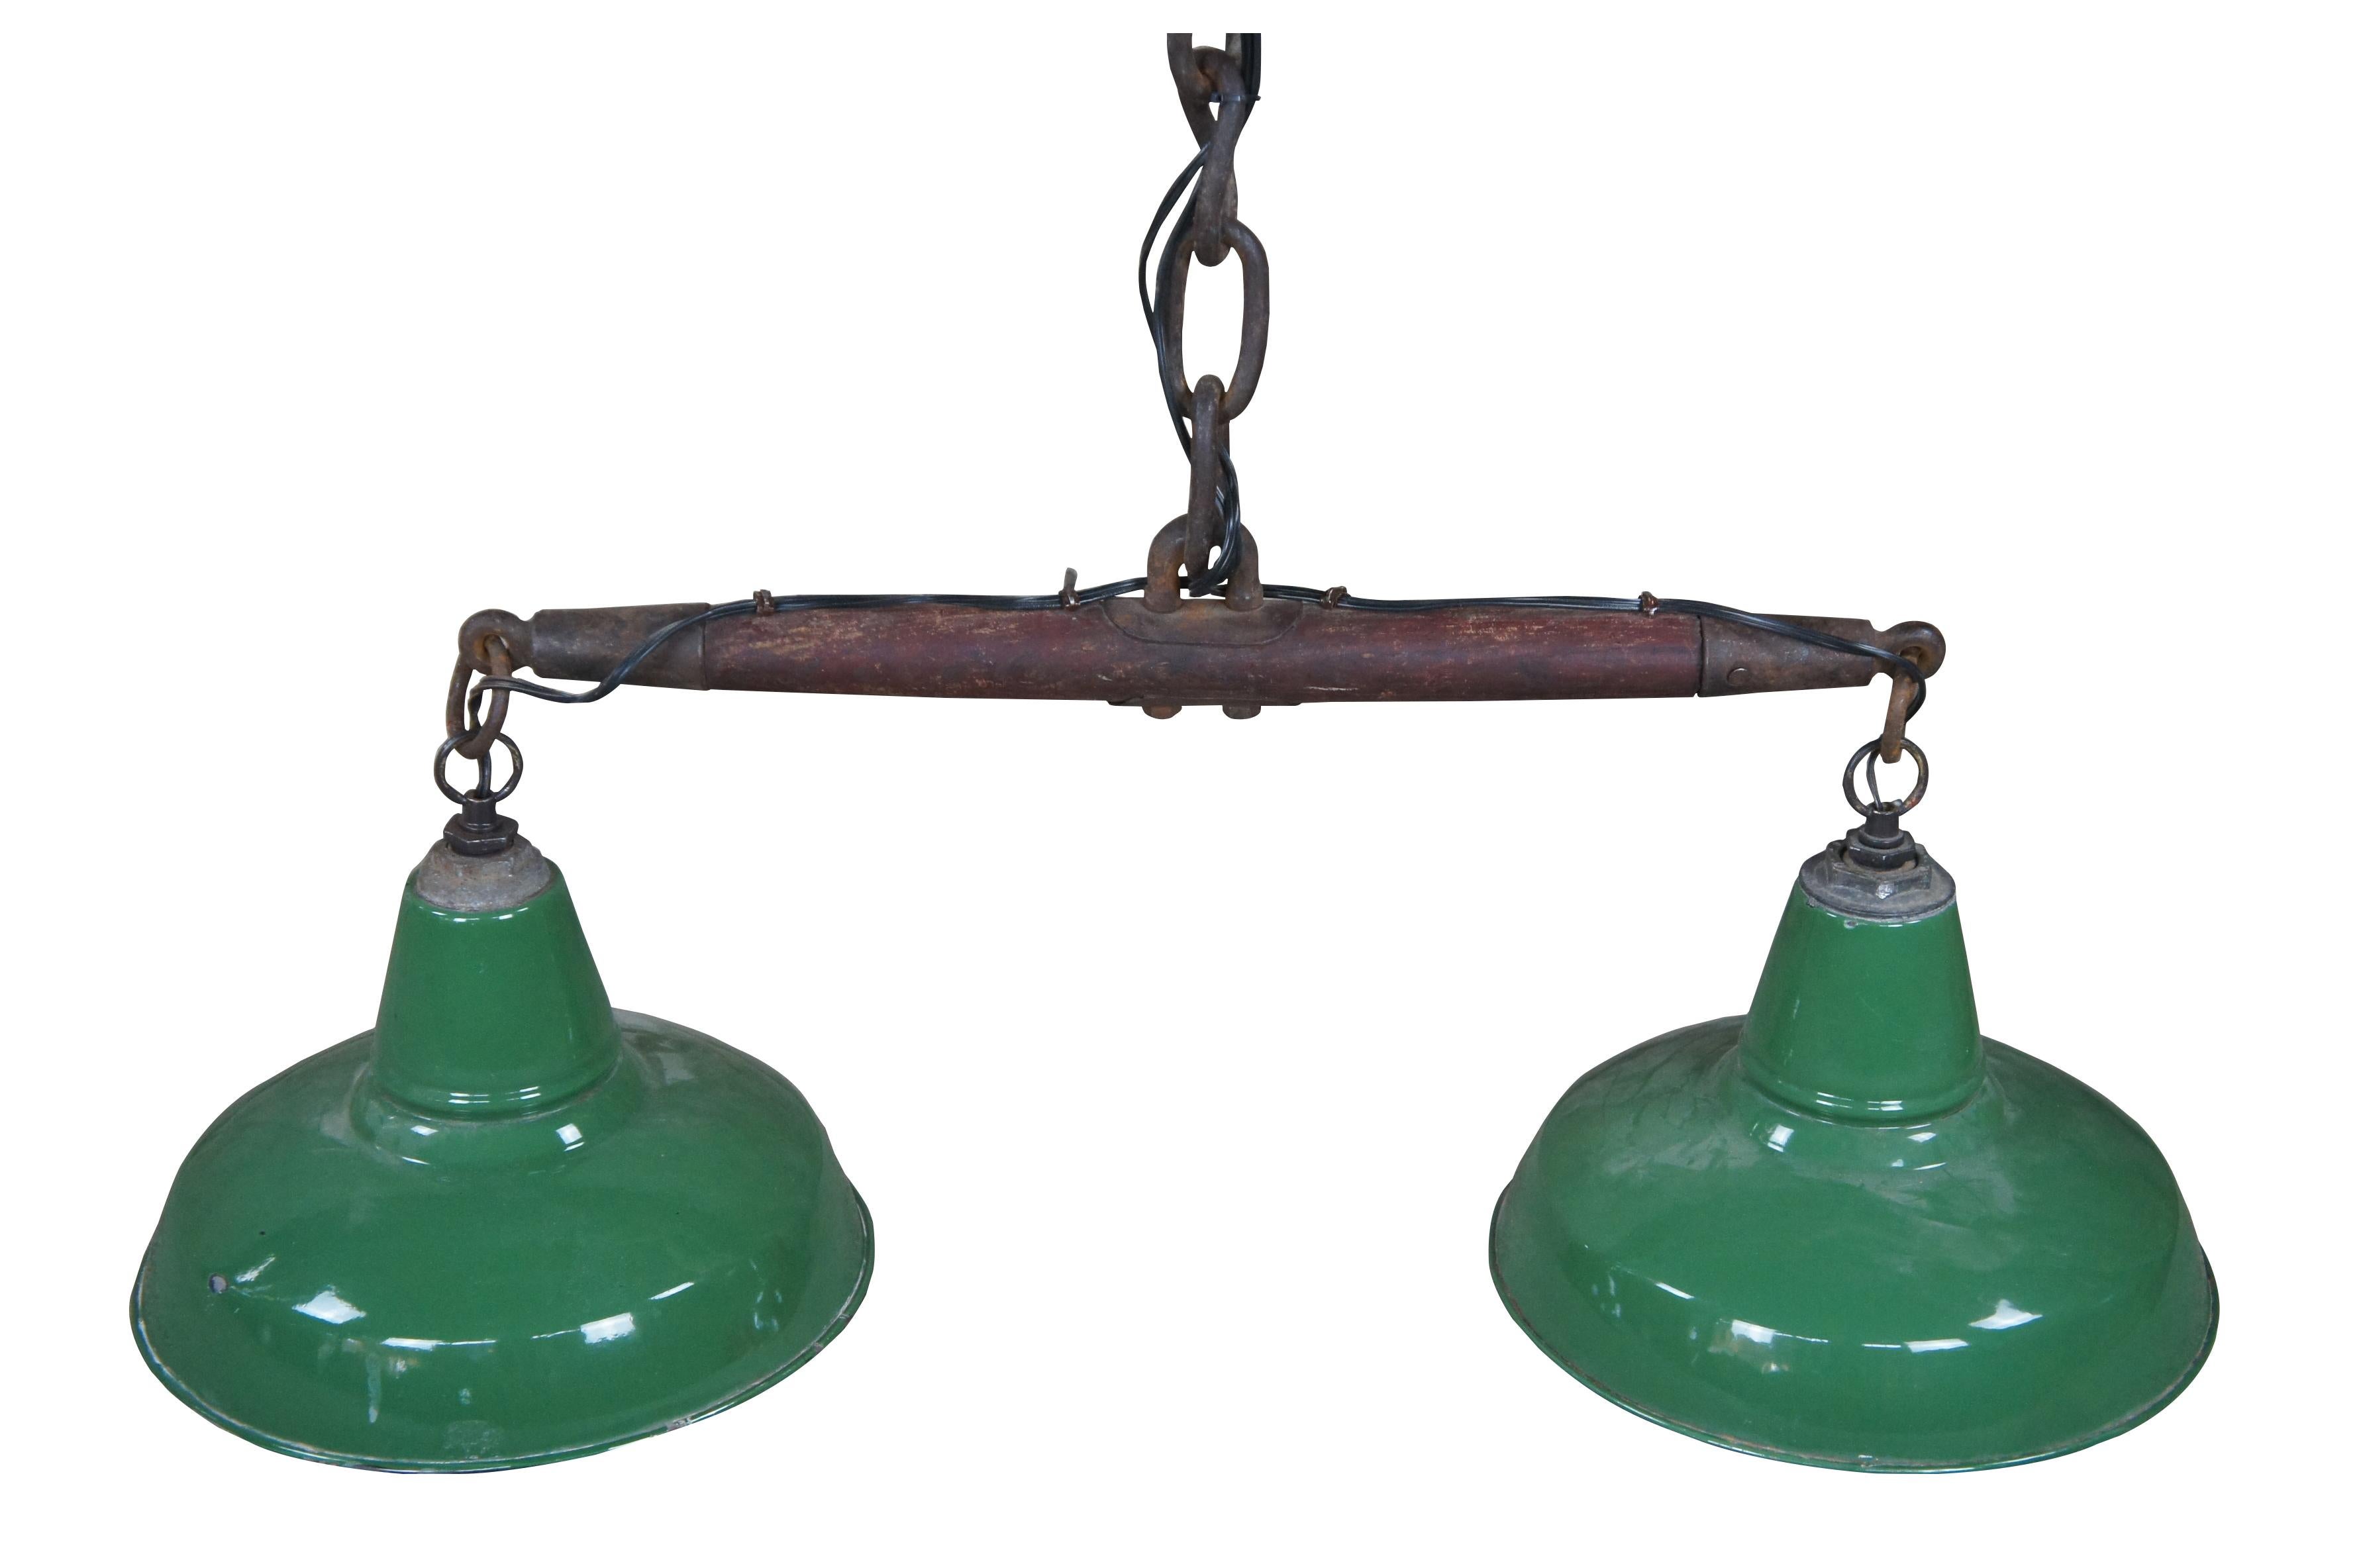 Antike grün emaillierte Hängelampe oder Laterne aus einem einzigen Baum mit Pferdegeschirr und schwerer Eisenkette. Maße: 36